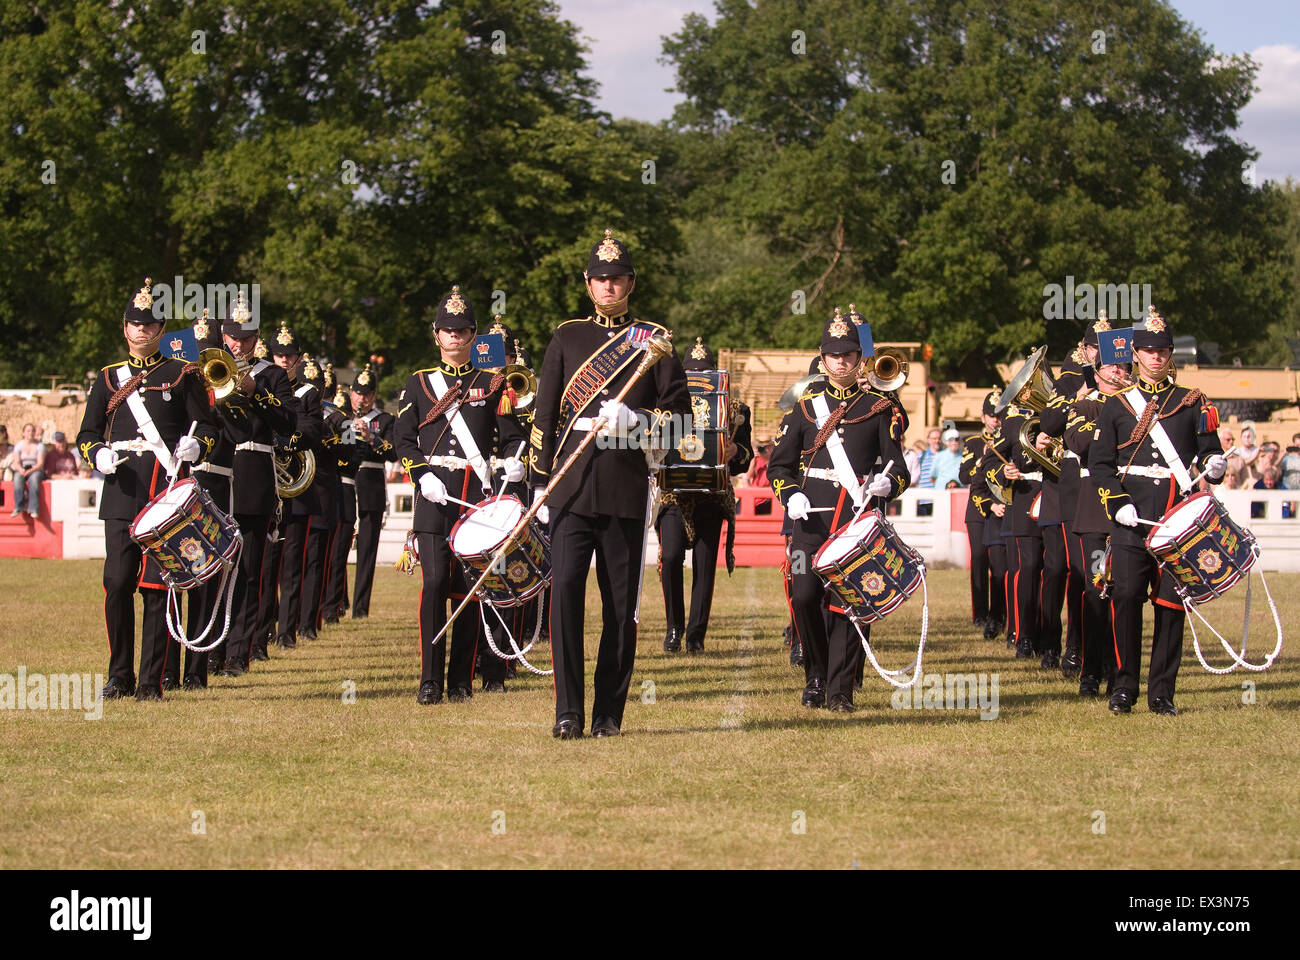 Band of the Royal Logistics Corps schlagen Rückzug an den Abschied von der Garnison Festival, Bordon, Hampshire, UK. Samstag, 27. J Stockfoto